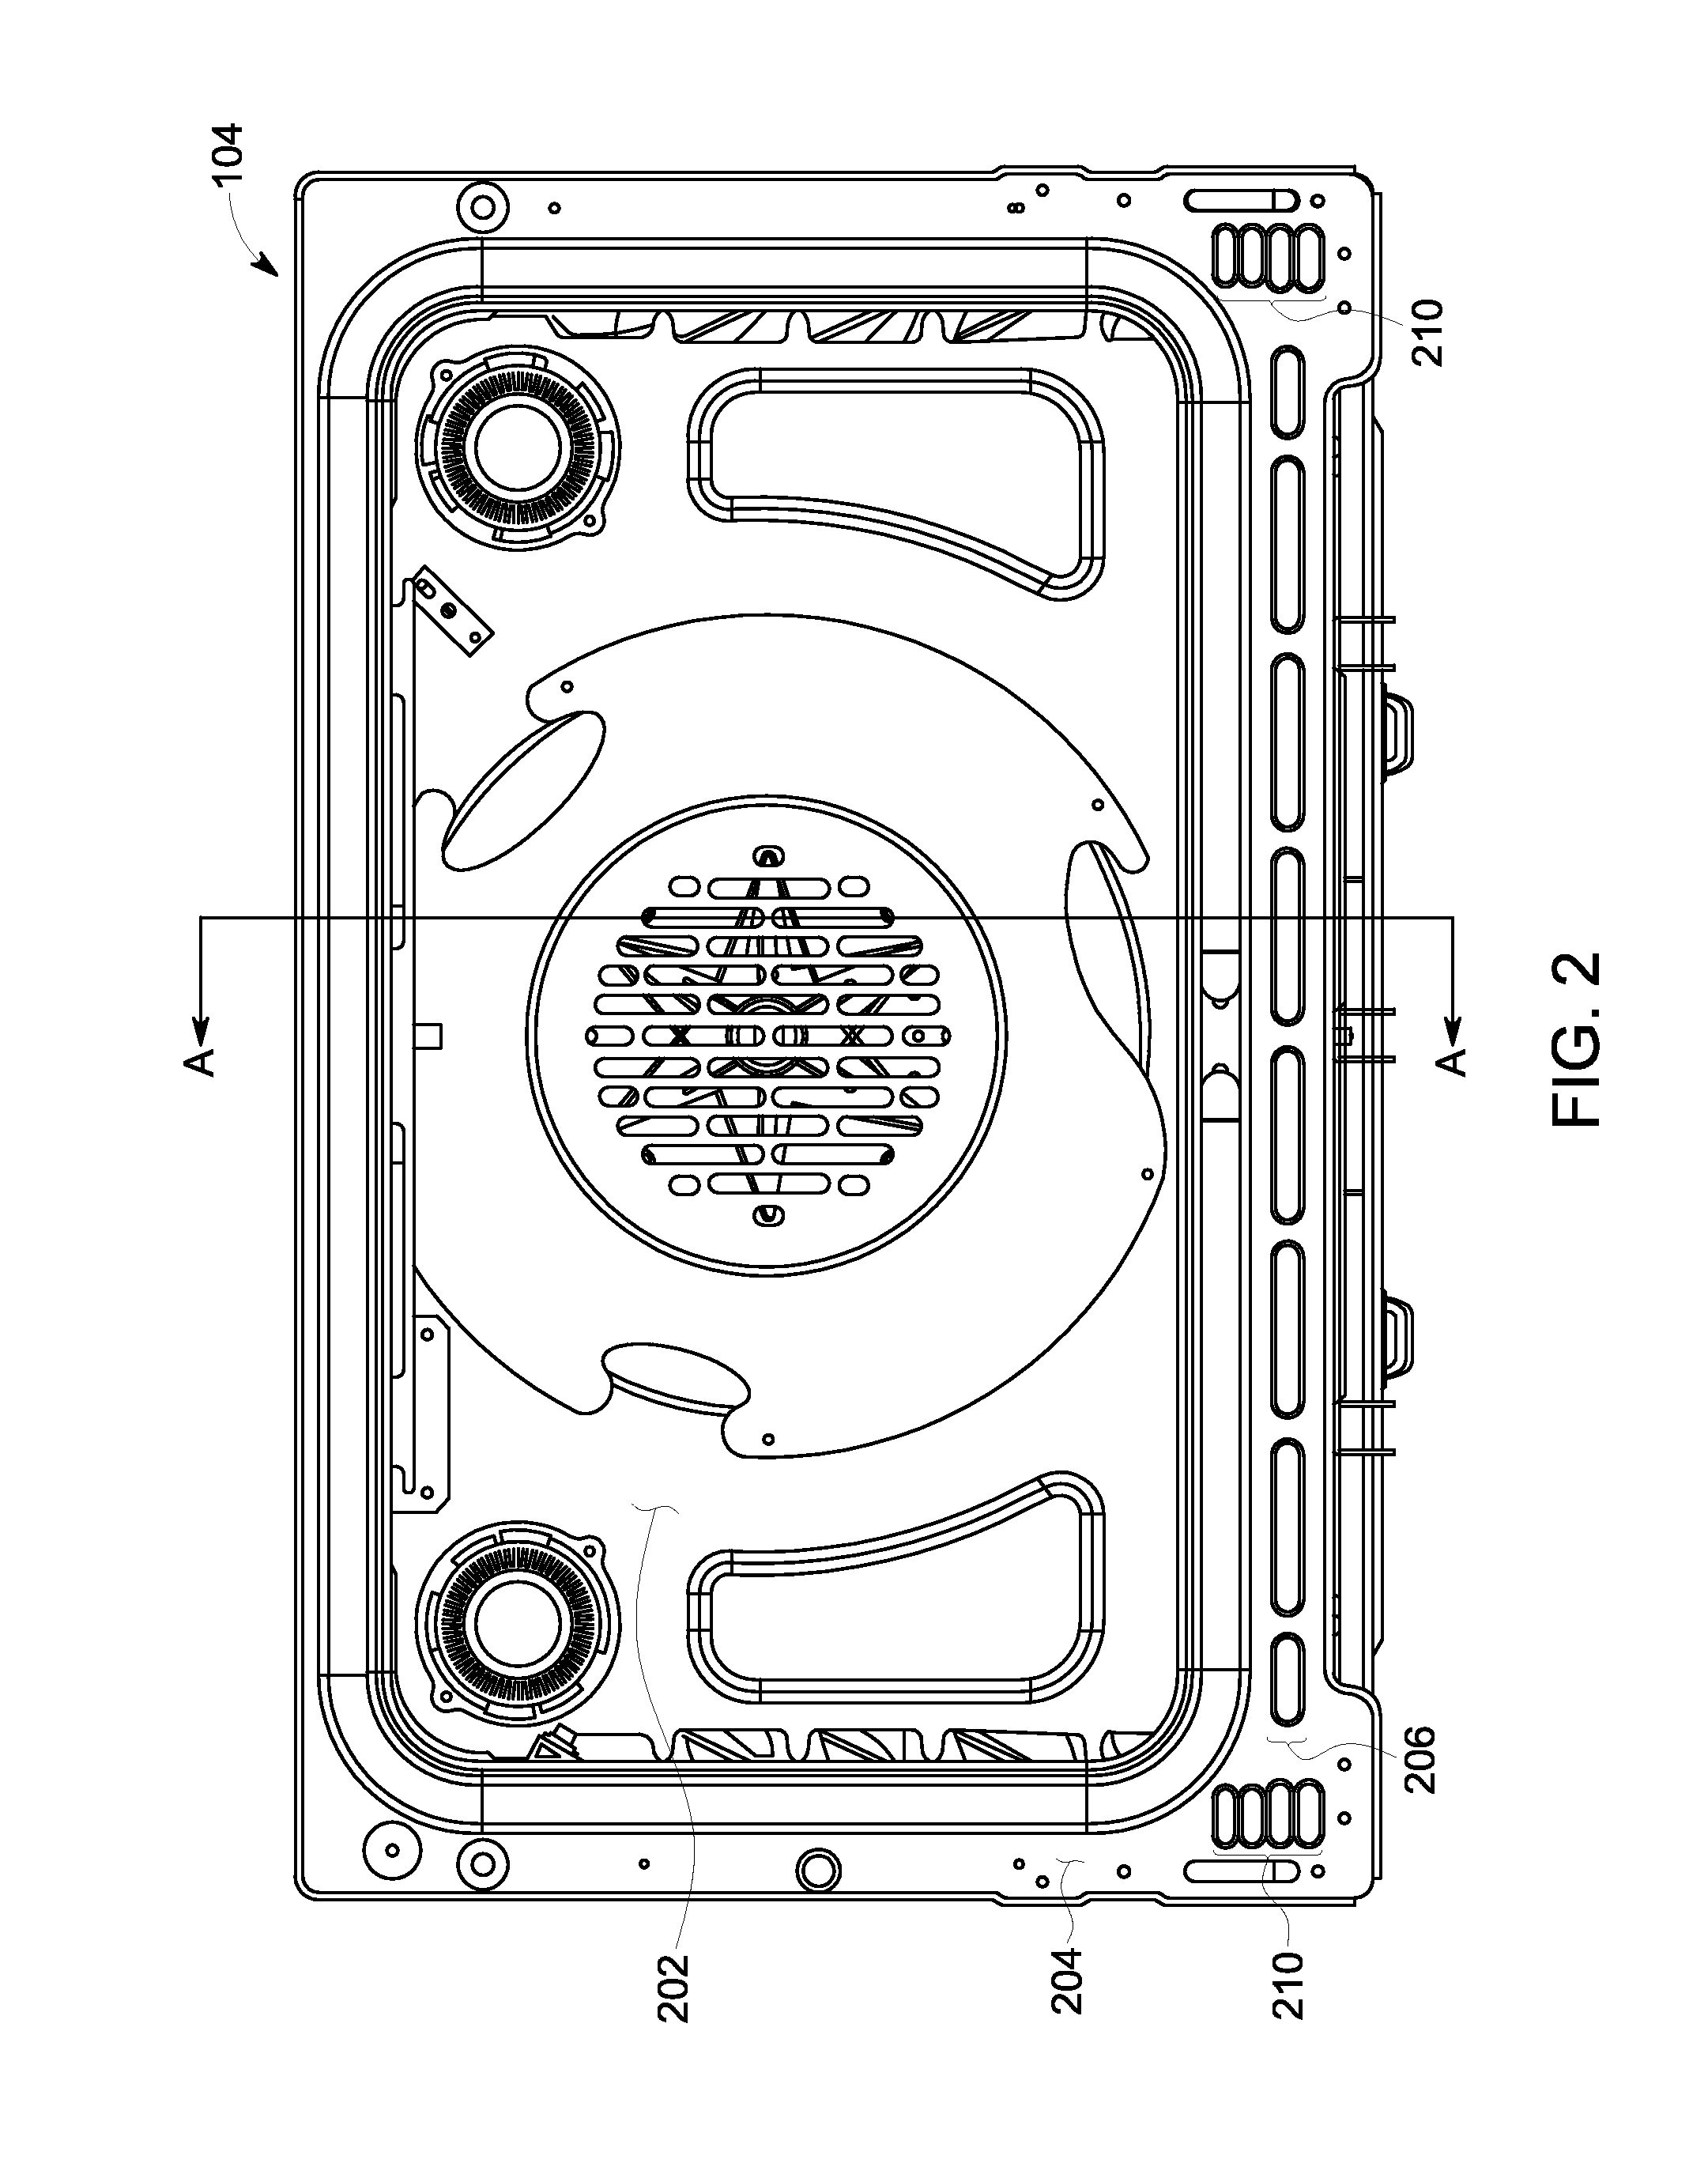 Appliance baffle system